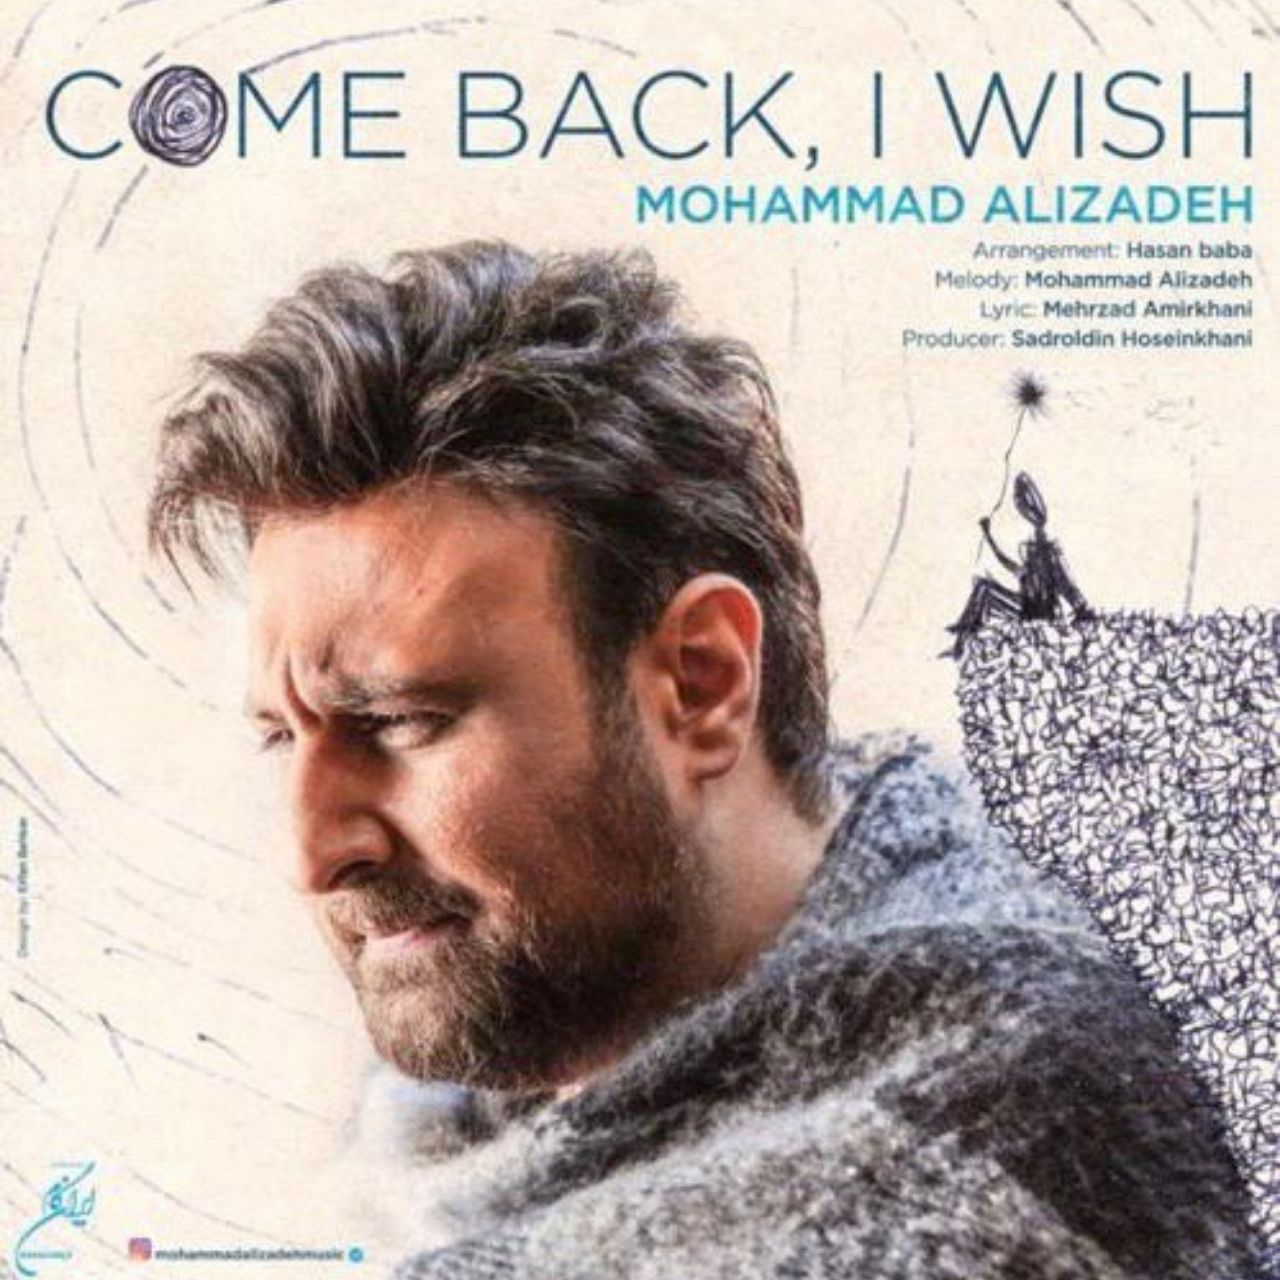  دانلود آهنگ جدید محمد علیزاده - برگردی ای کاش | Download New Music By Mohammad Alizadeh - Bargardi Ey Kash